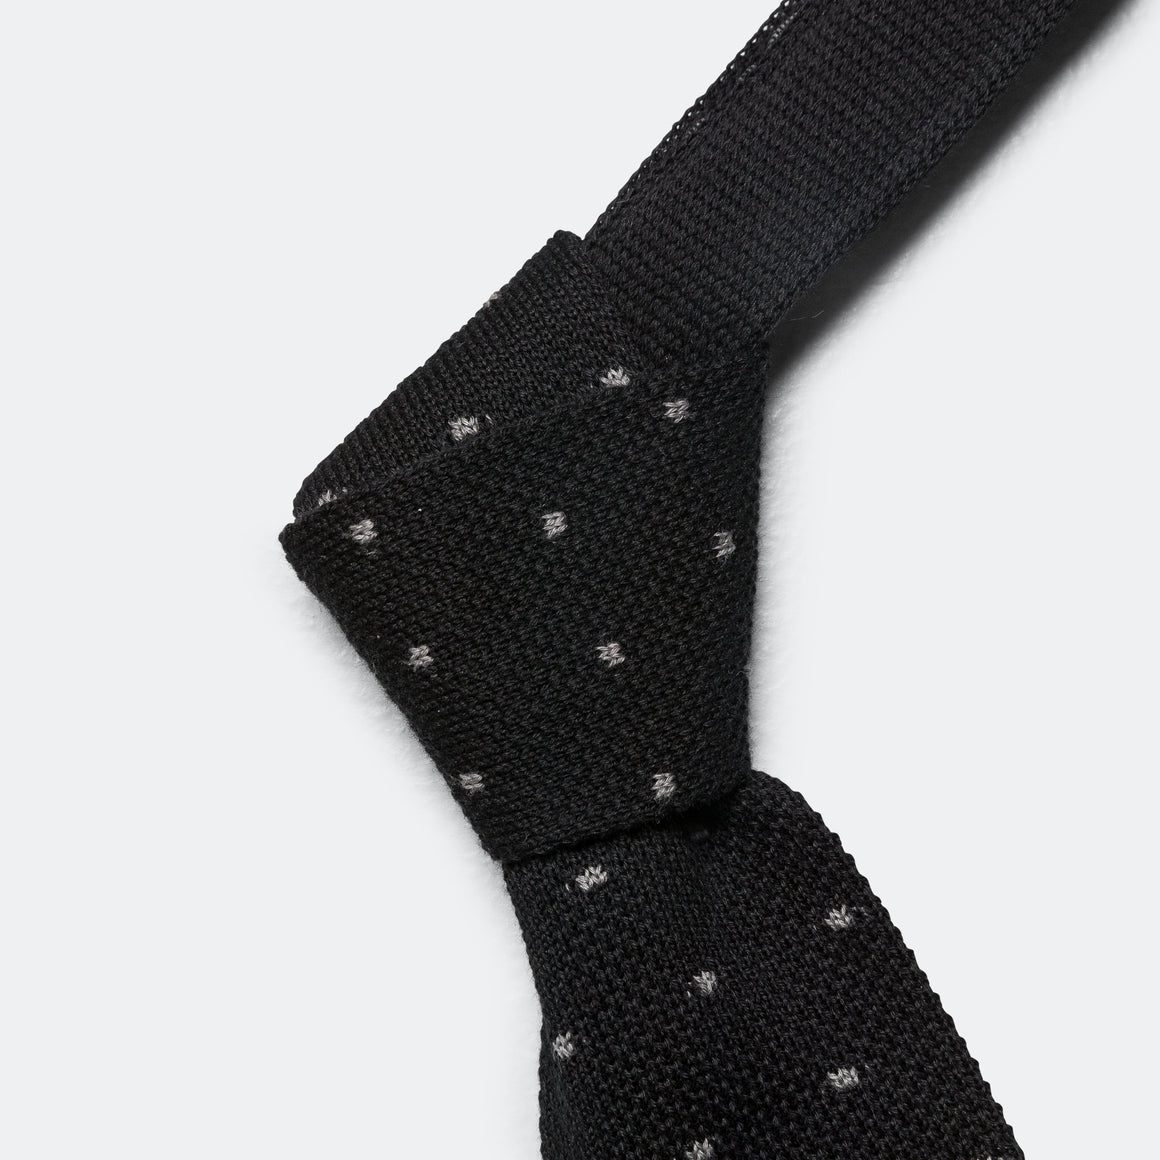 Knit Tie - Black Polka Dot